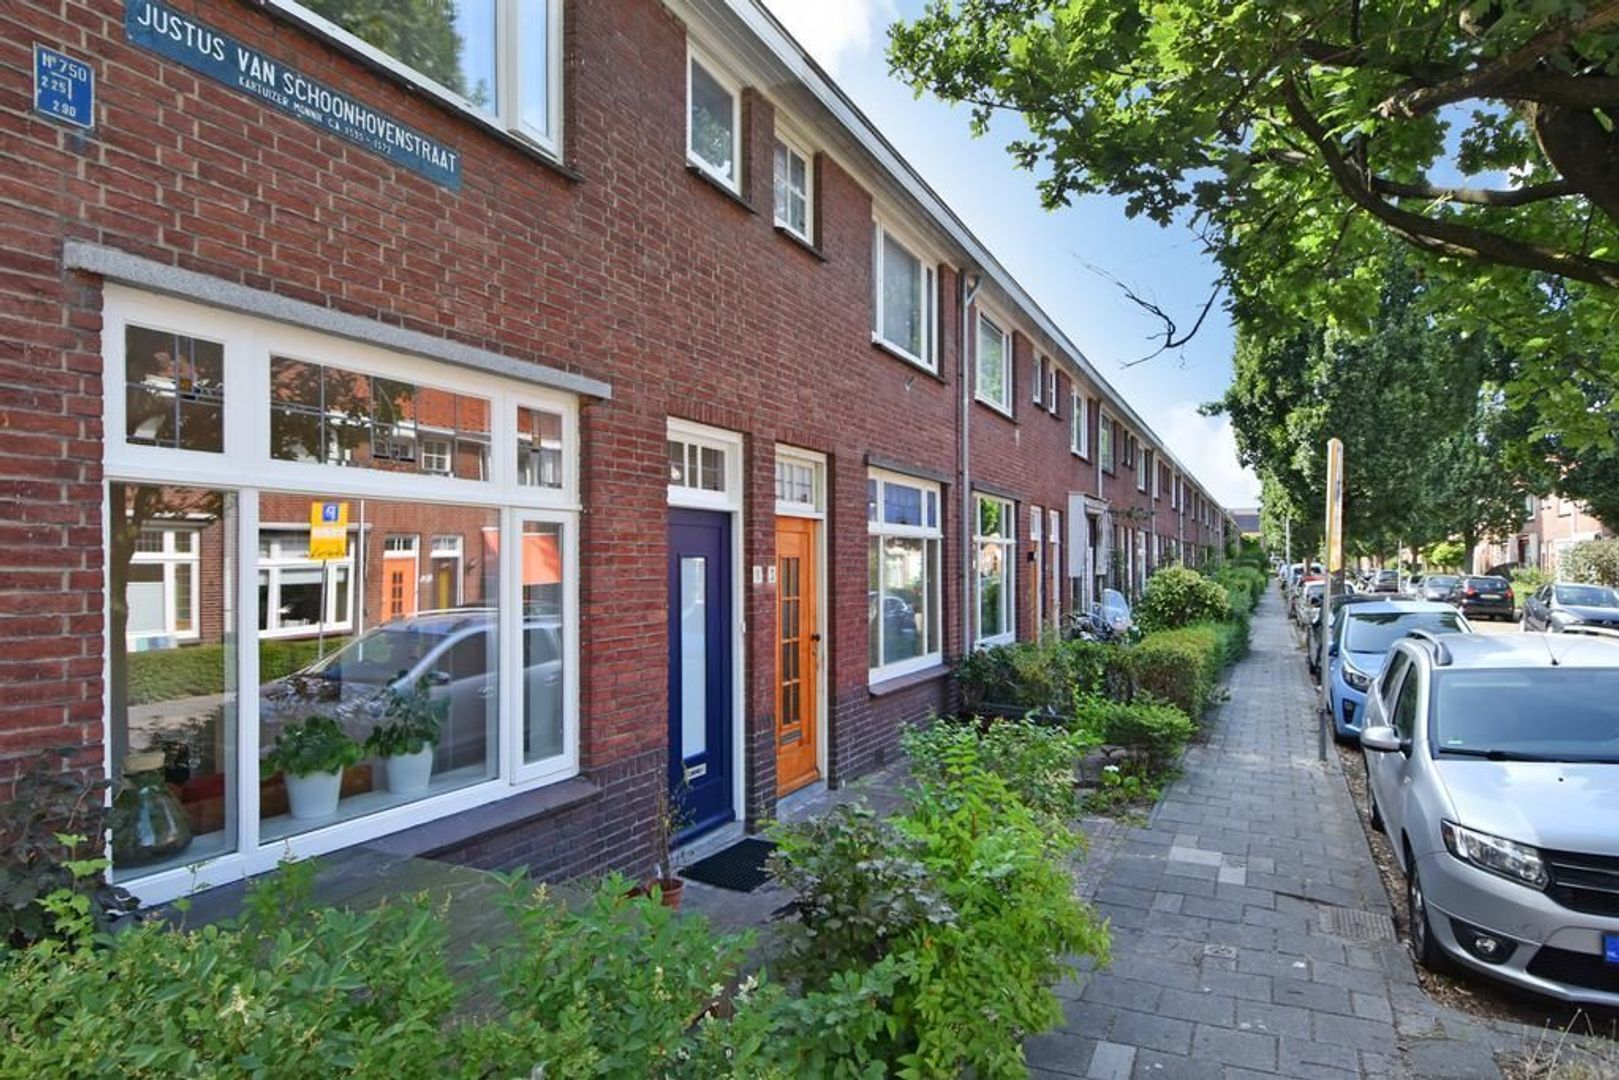 Justus van Schoonhovenstraat 1, Delft foto-1